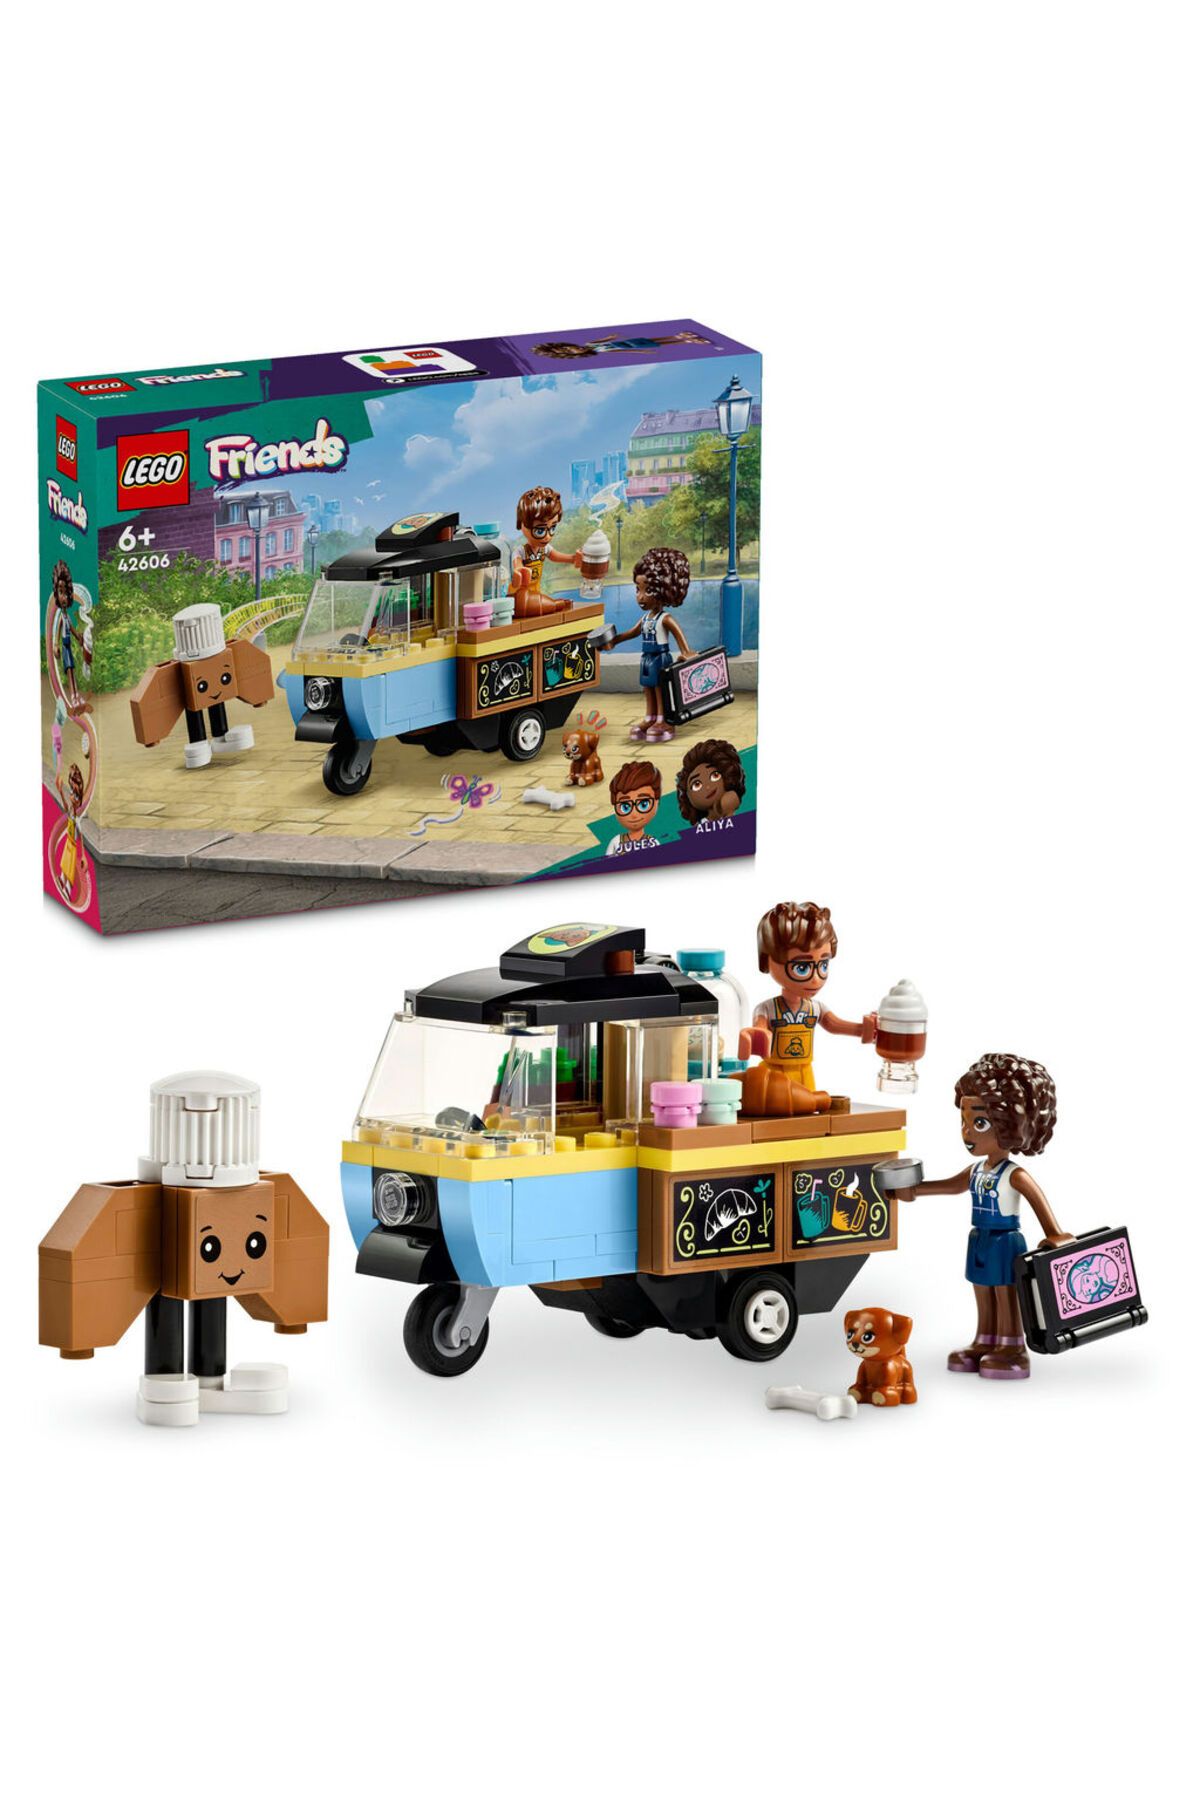 LEGO ® Friends Mobil Pastane 42606  - 6 Yaş ve Üzeri İçin Yapım Seti (125 Parça)